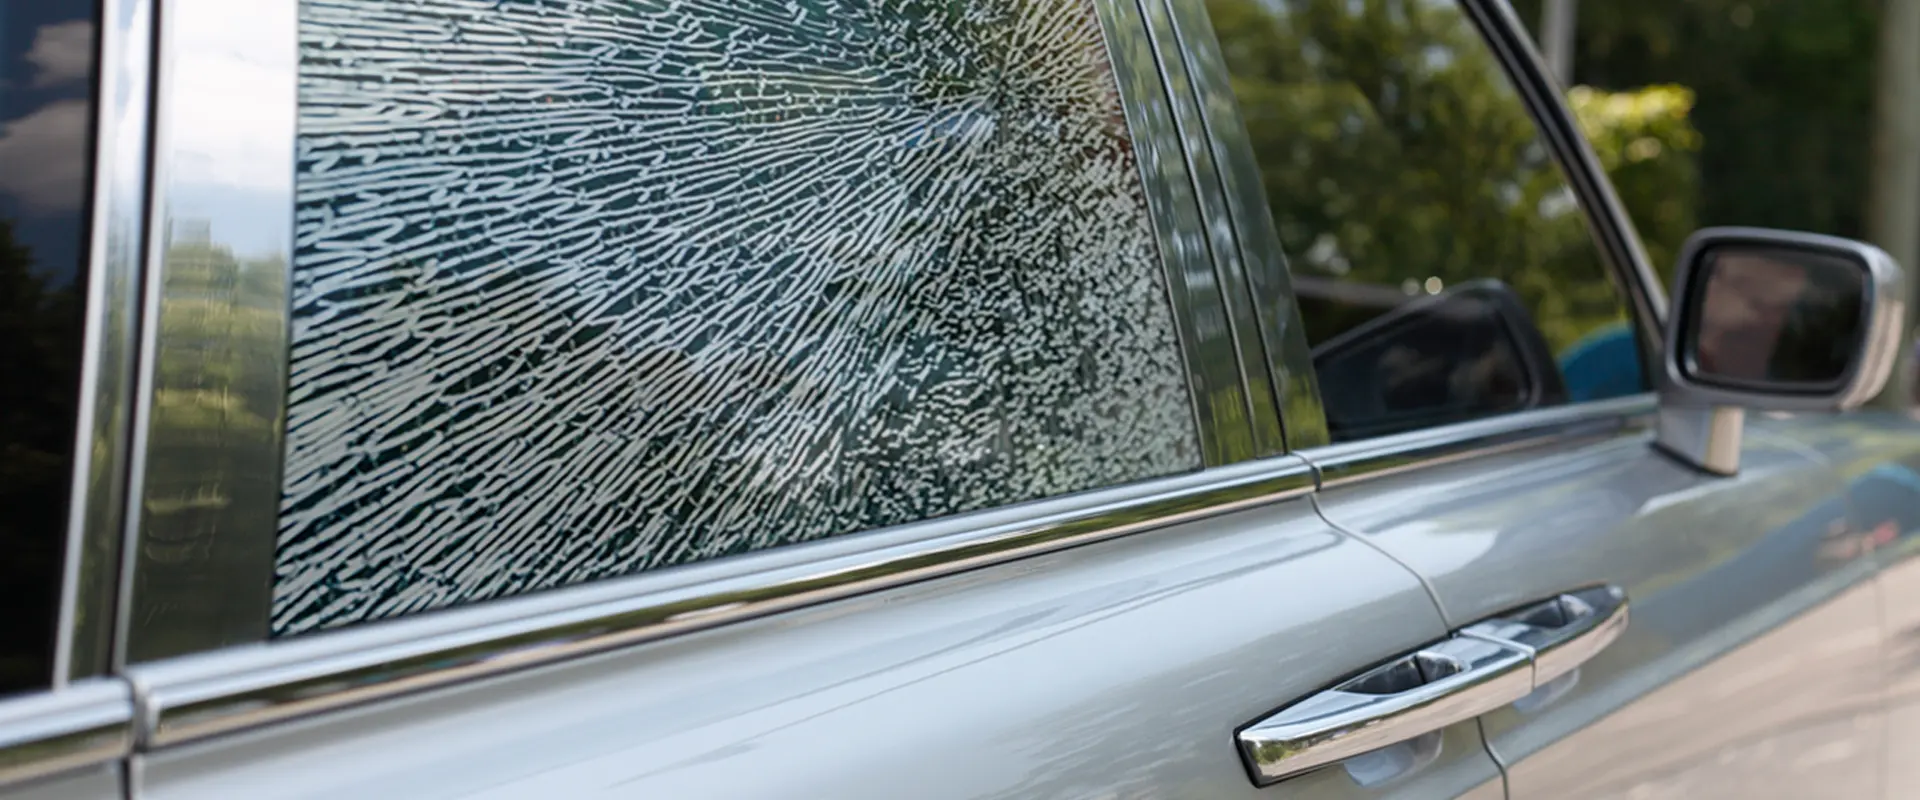 Die zersprungene Fensterscheibe eines Autos.